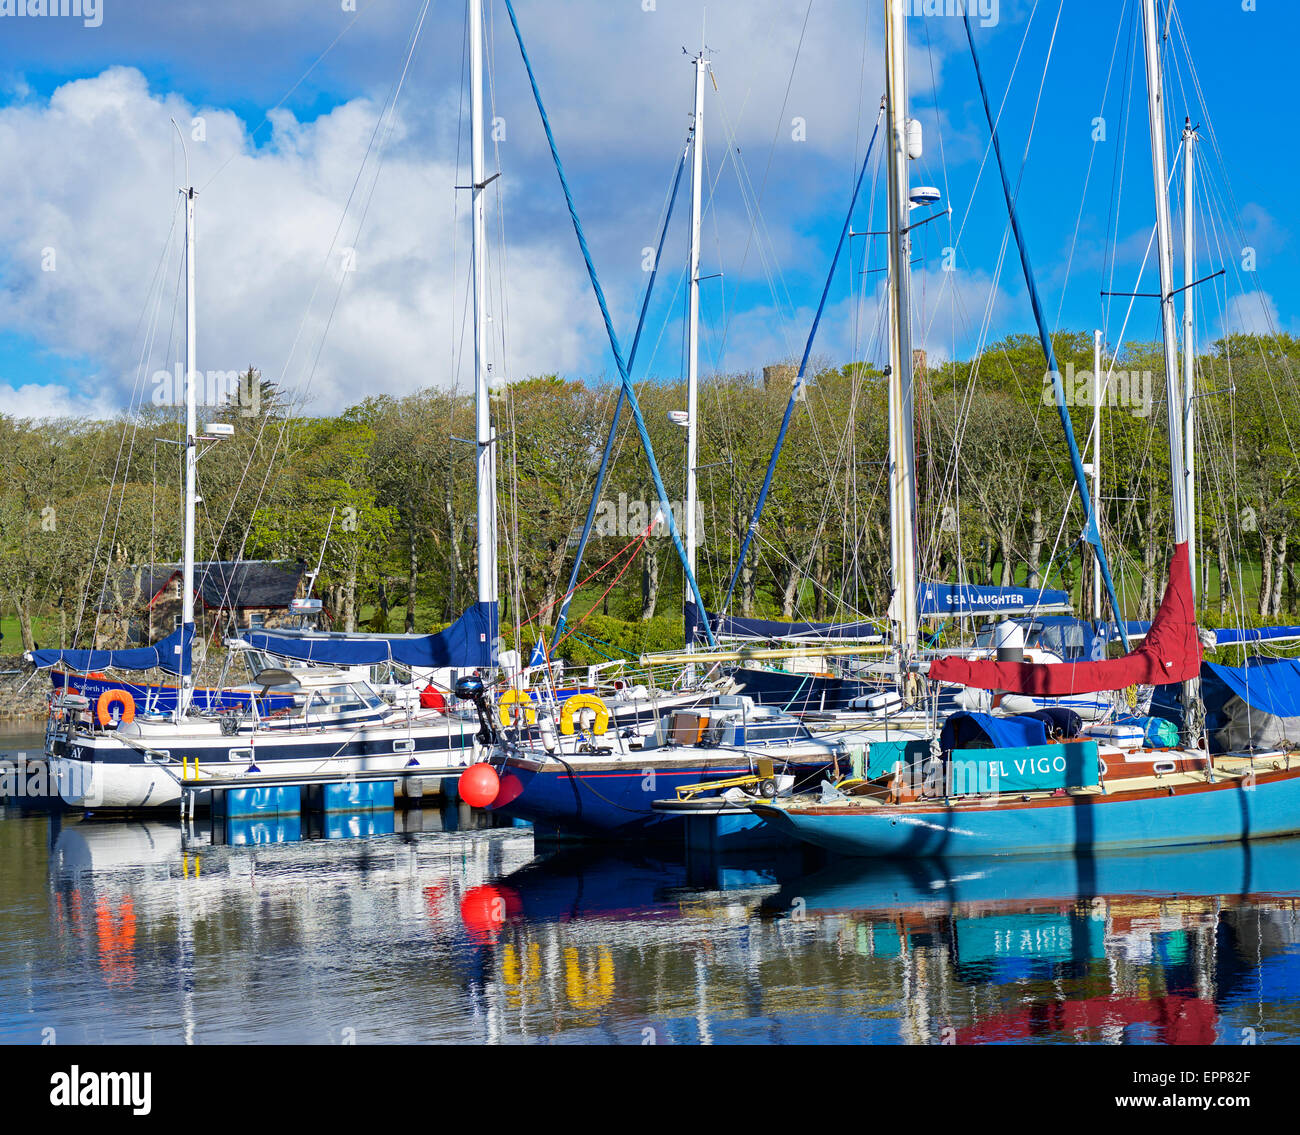 Boat marina, Stornoway, Isle of Lewis, Outer Hebrides, Scotland UK Stock Photo